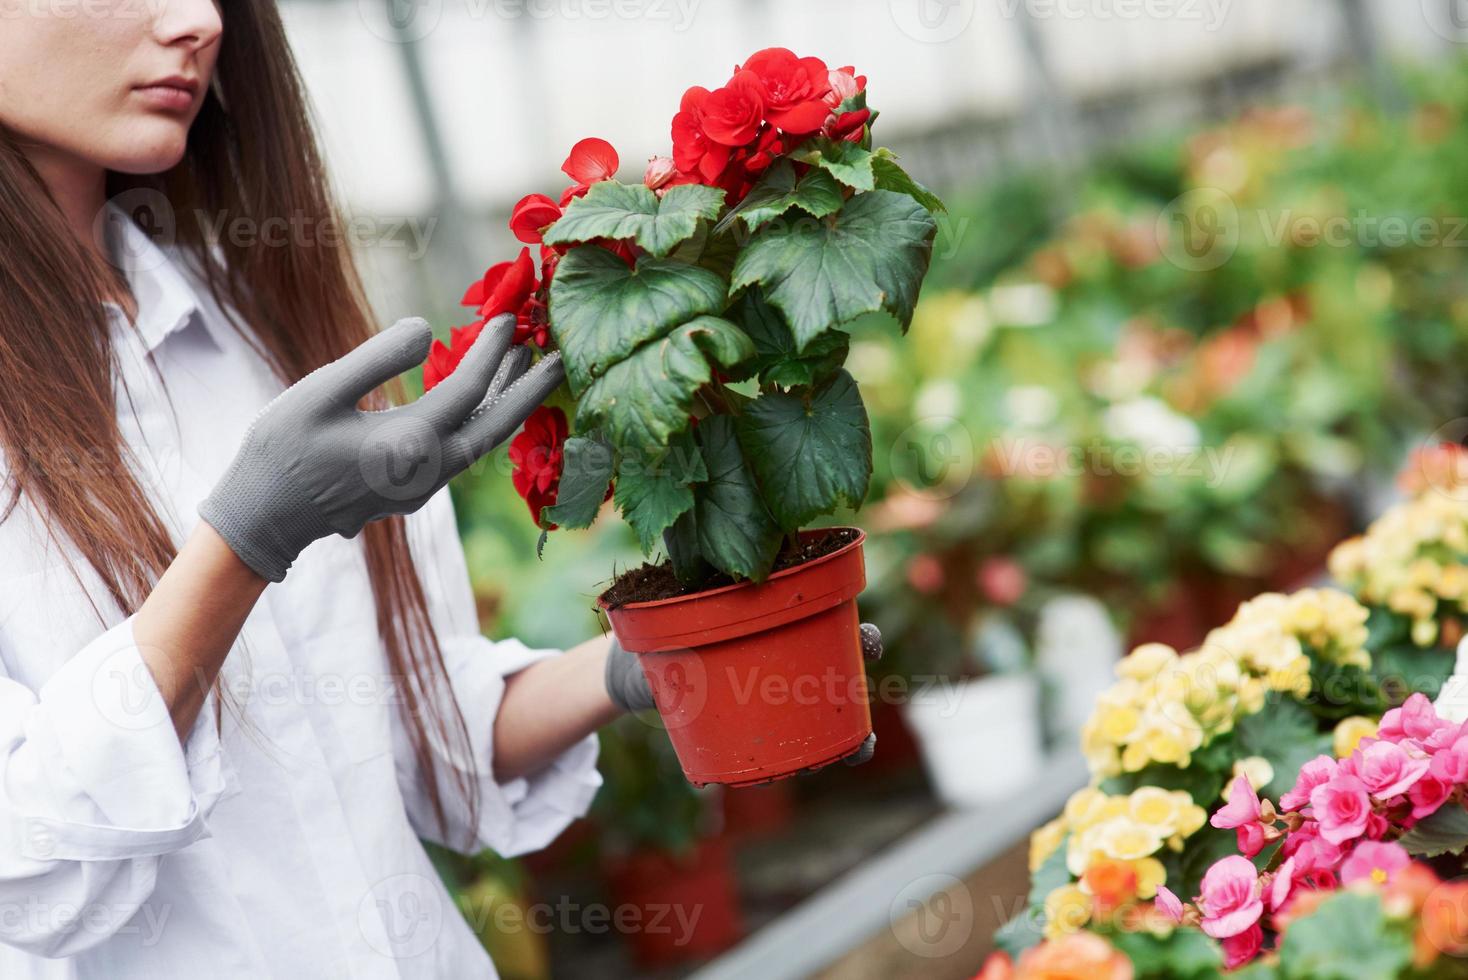 planten verzorgen. meisje met handschoenen aan haar handen met pot met rode bloemen foto